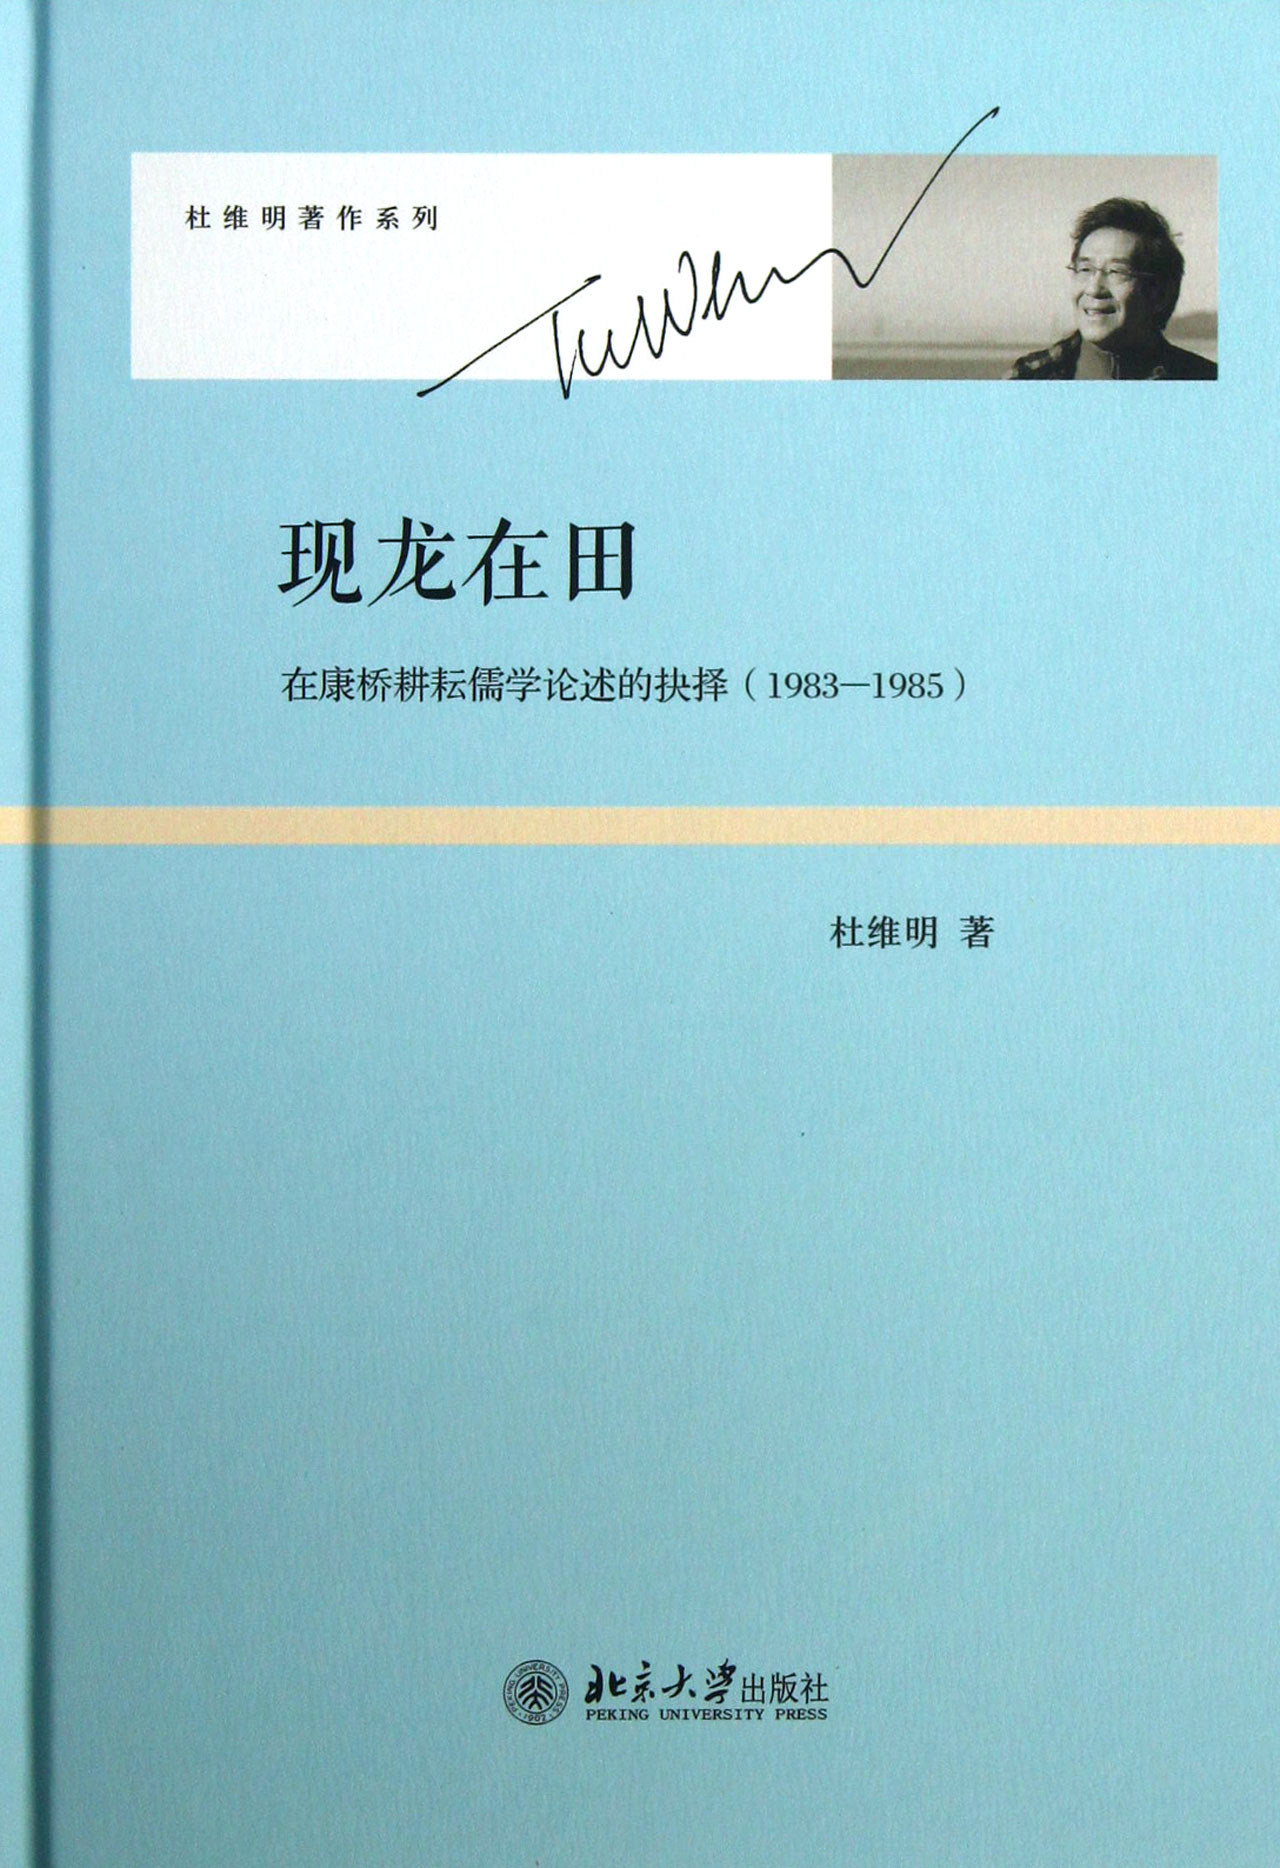 现龙在田:在康桥耕耘儒学论述的抉择(1983-1985) 精装 杜维明著作系列 北京大学出版社